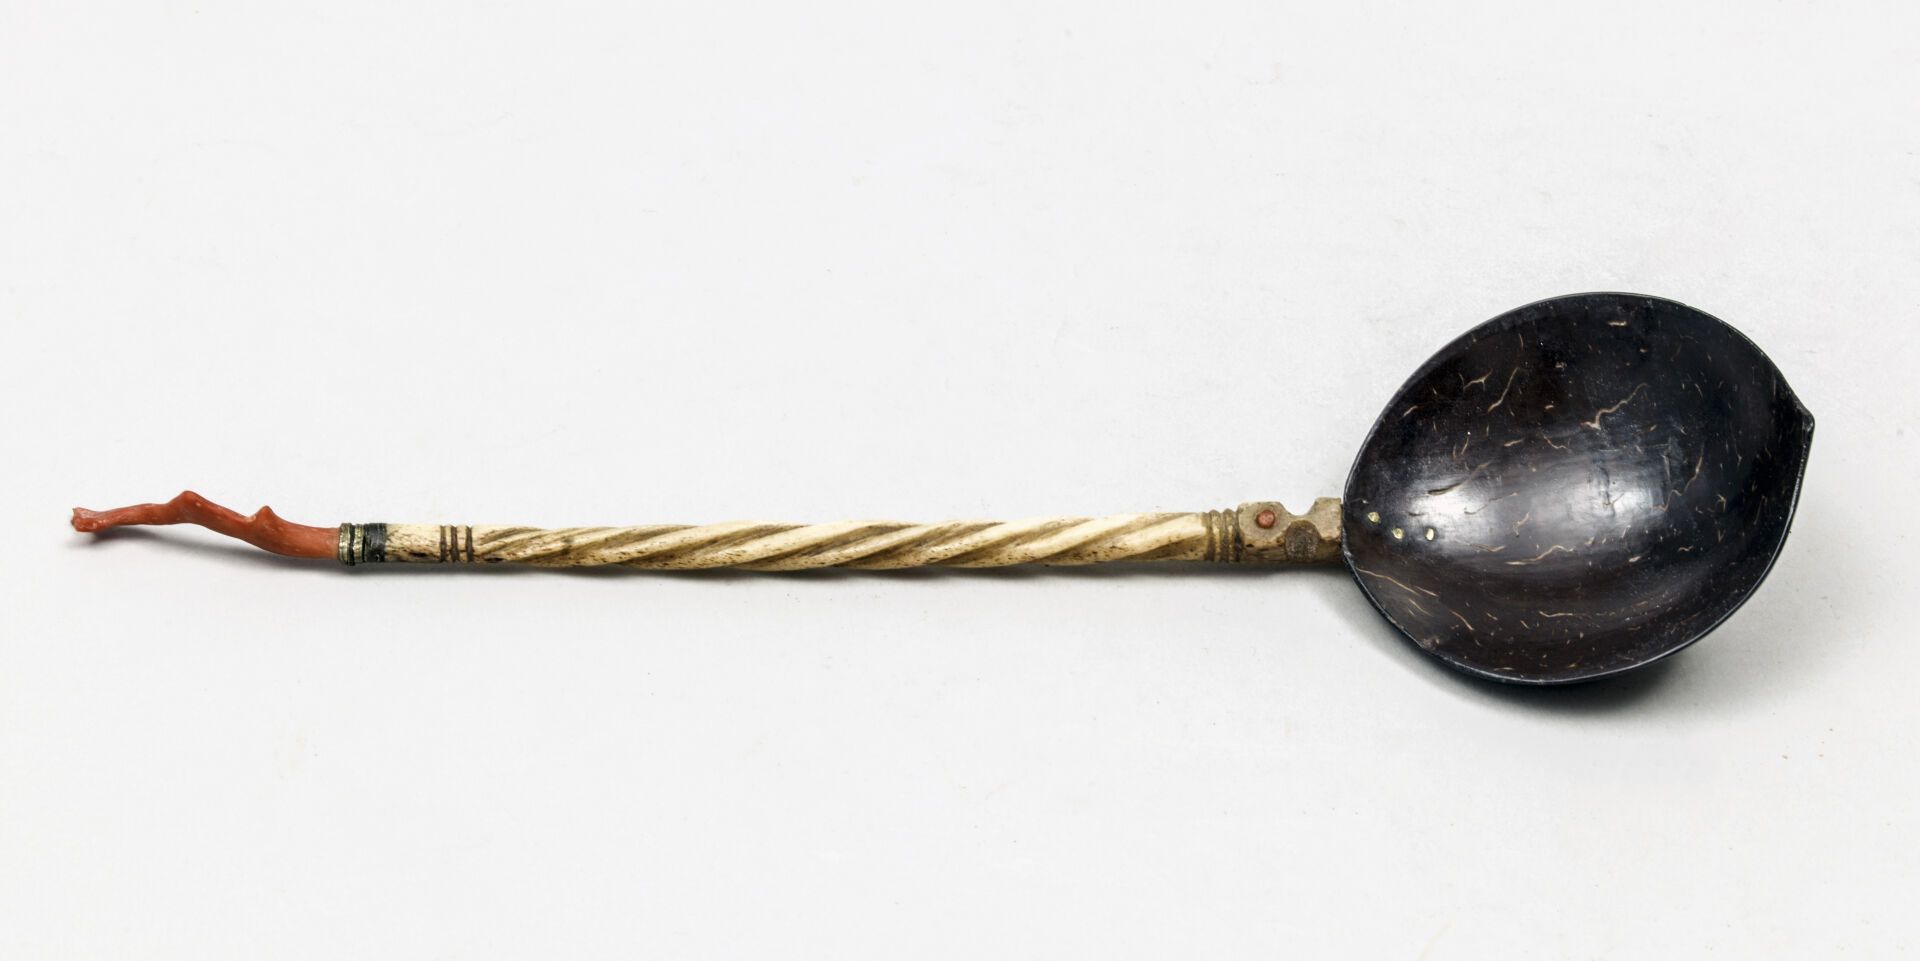 Null CUILLERE en noix de coco, os, corail. 

XIX/XXe siècle

L : 25,5 cm

(1373)